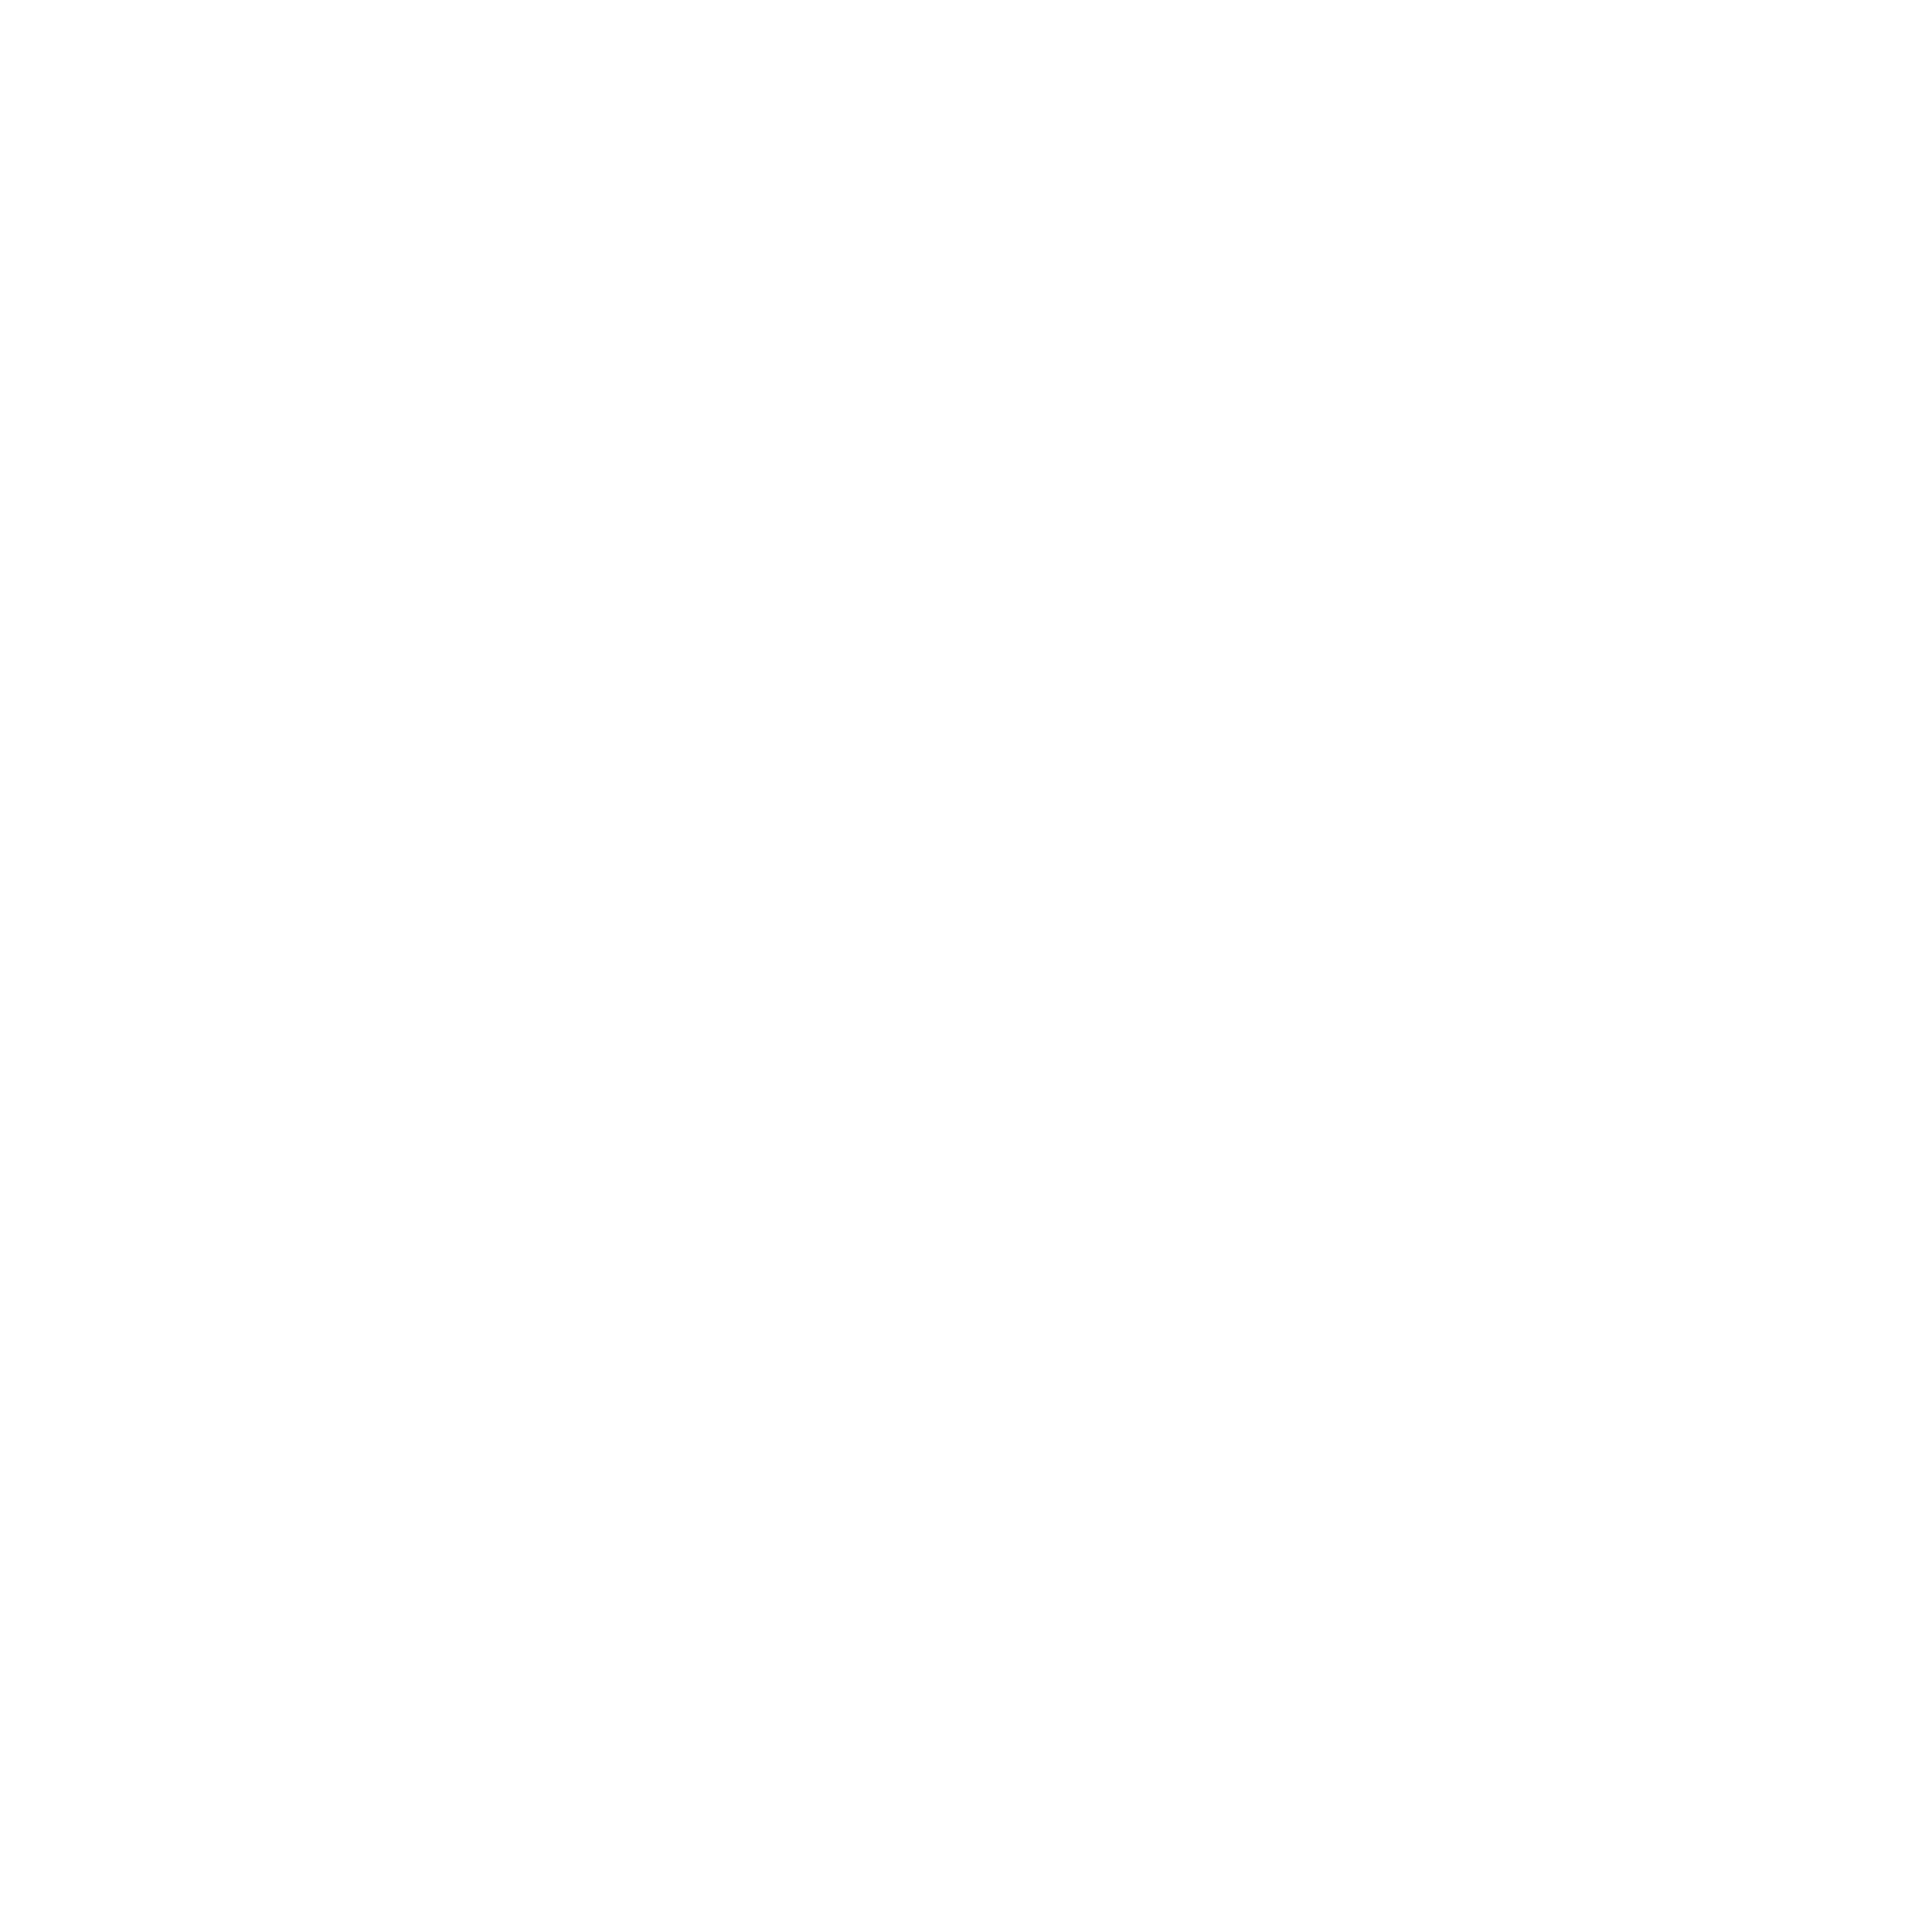 Building The Bluegrass